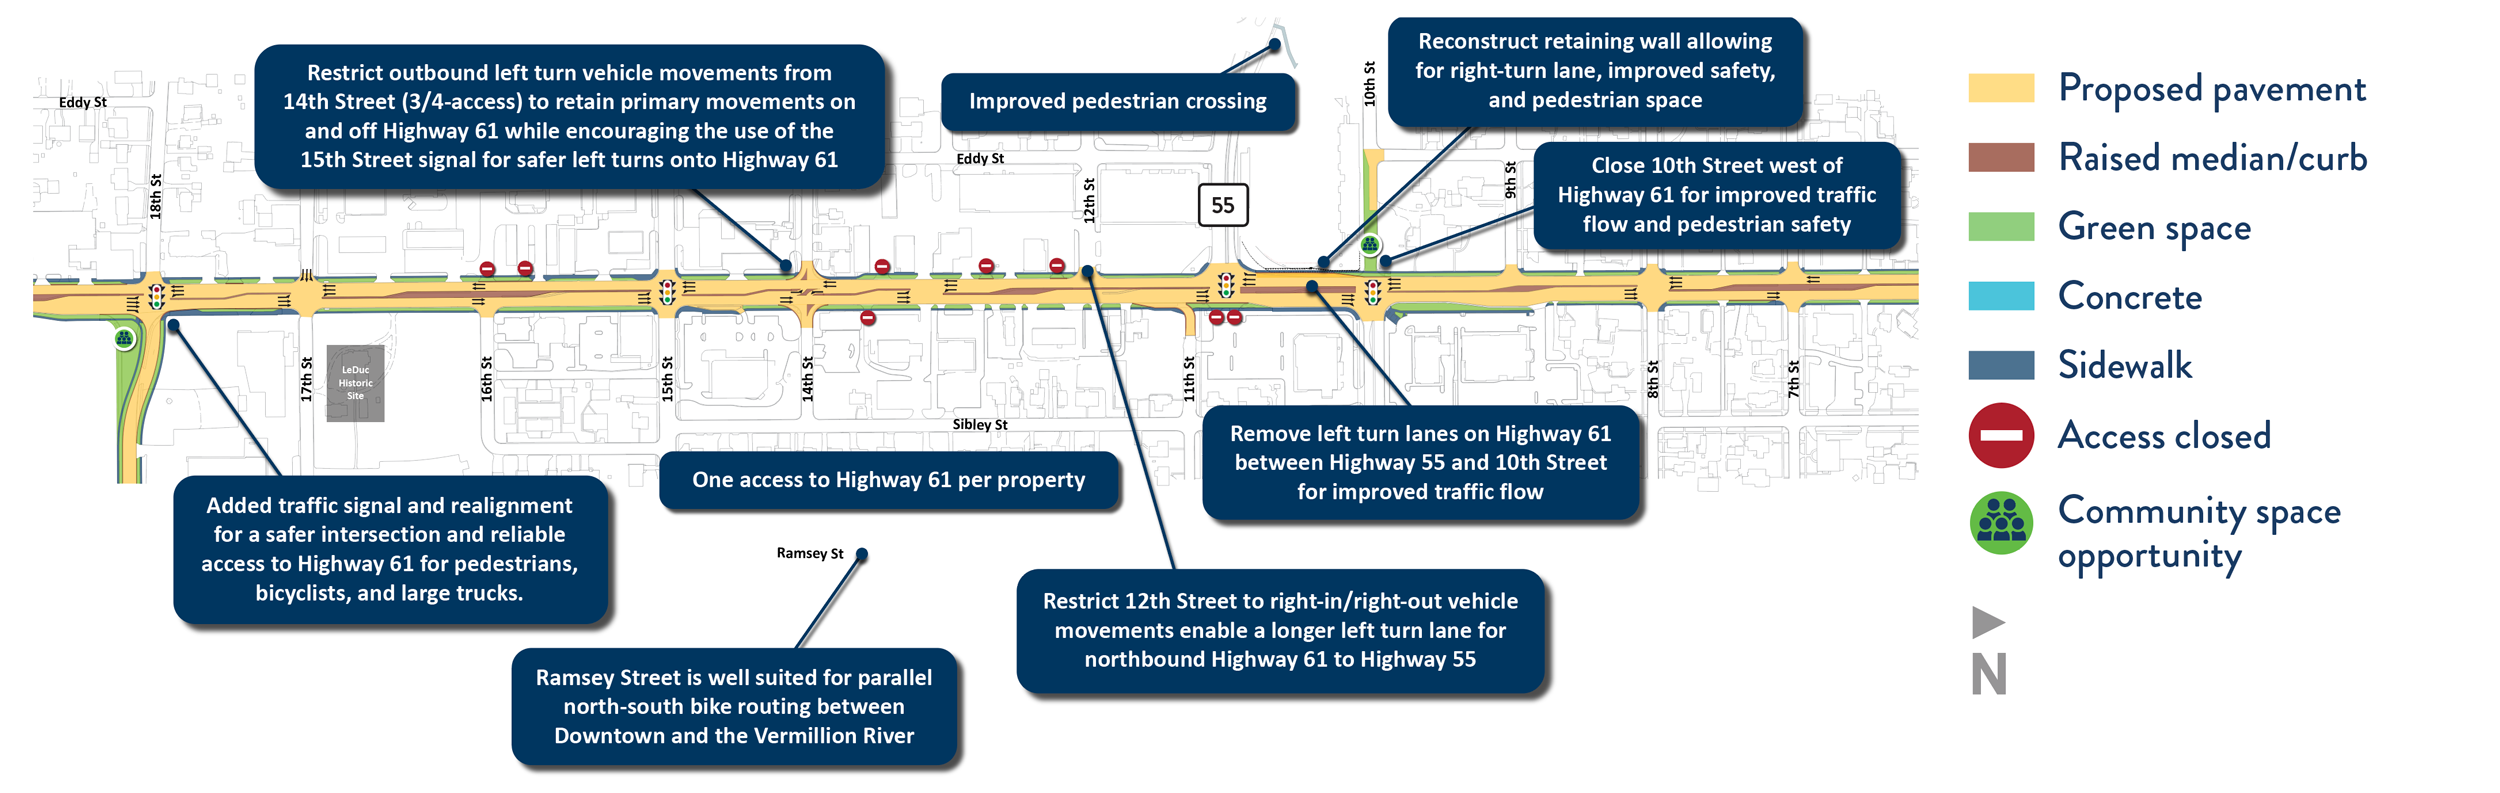 Highway 61 improvement concept in Midtown district